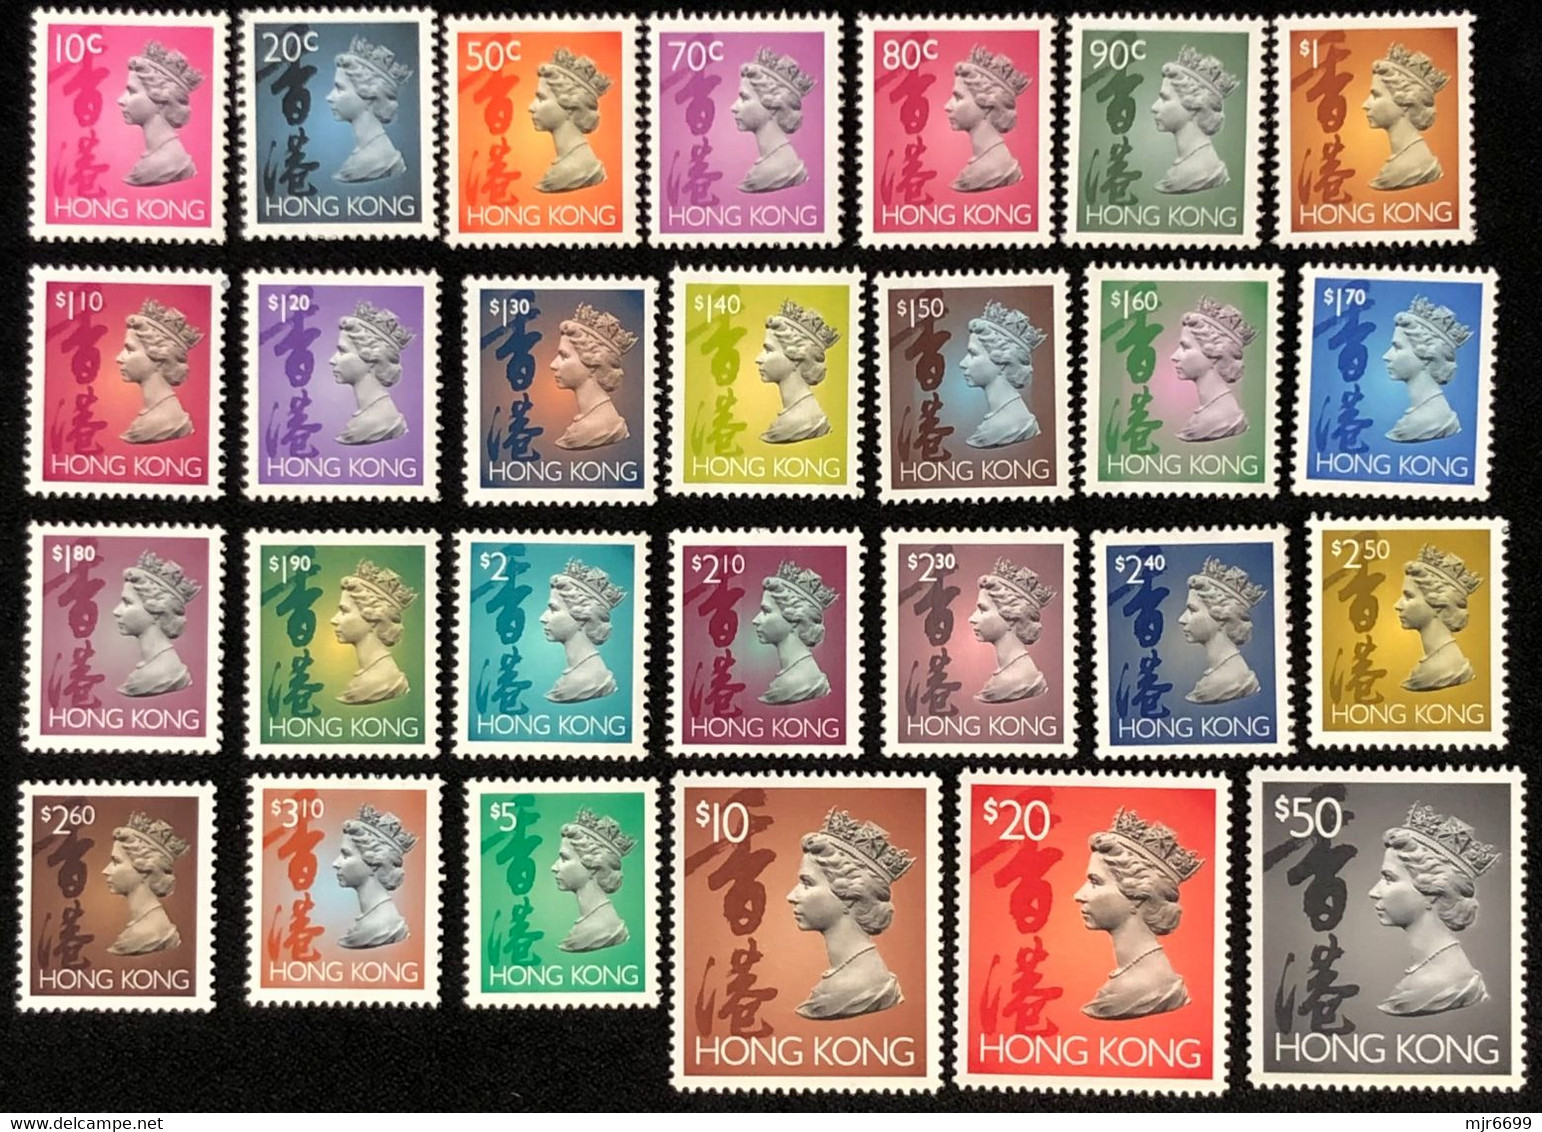 HONG KONG 1992 SHORT SET OF 27 UM MINT, MISSING 6CENTS - Unused Stamps